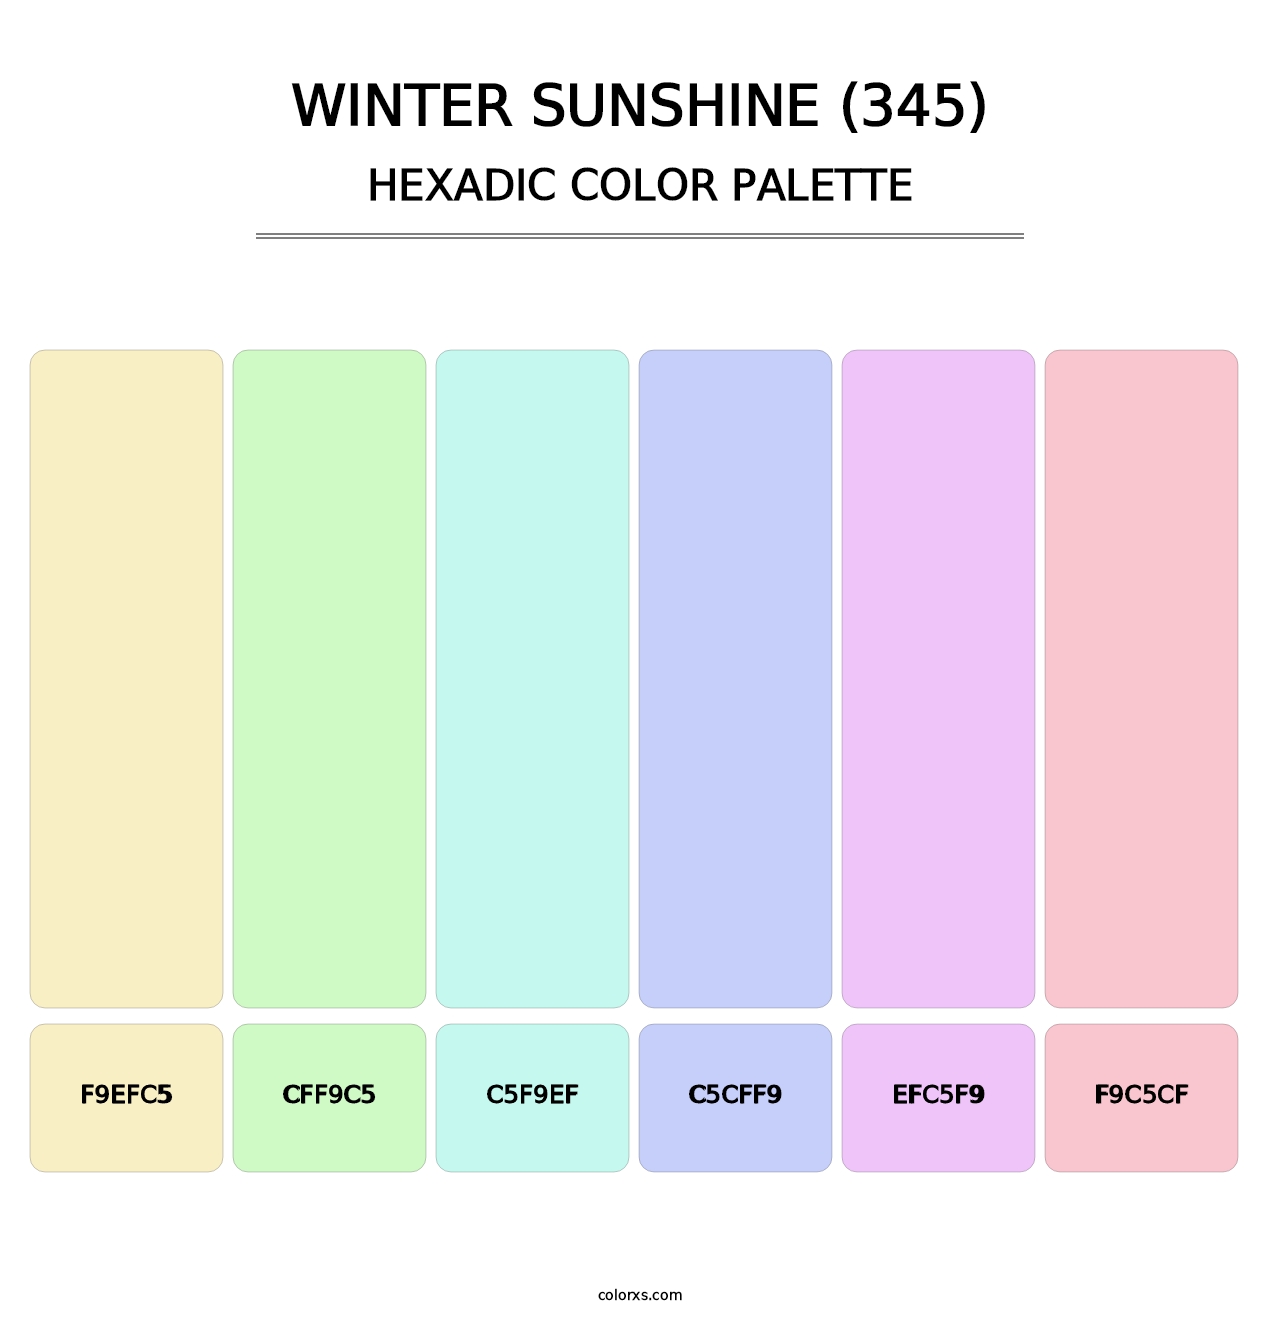 Winter Sunshine (345) - Hexadic Color Palette